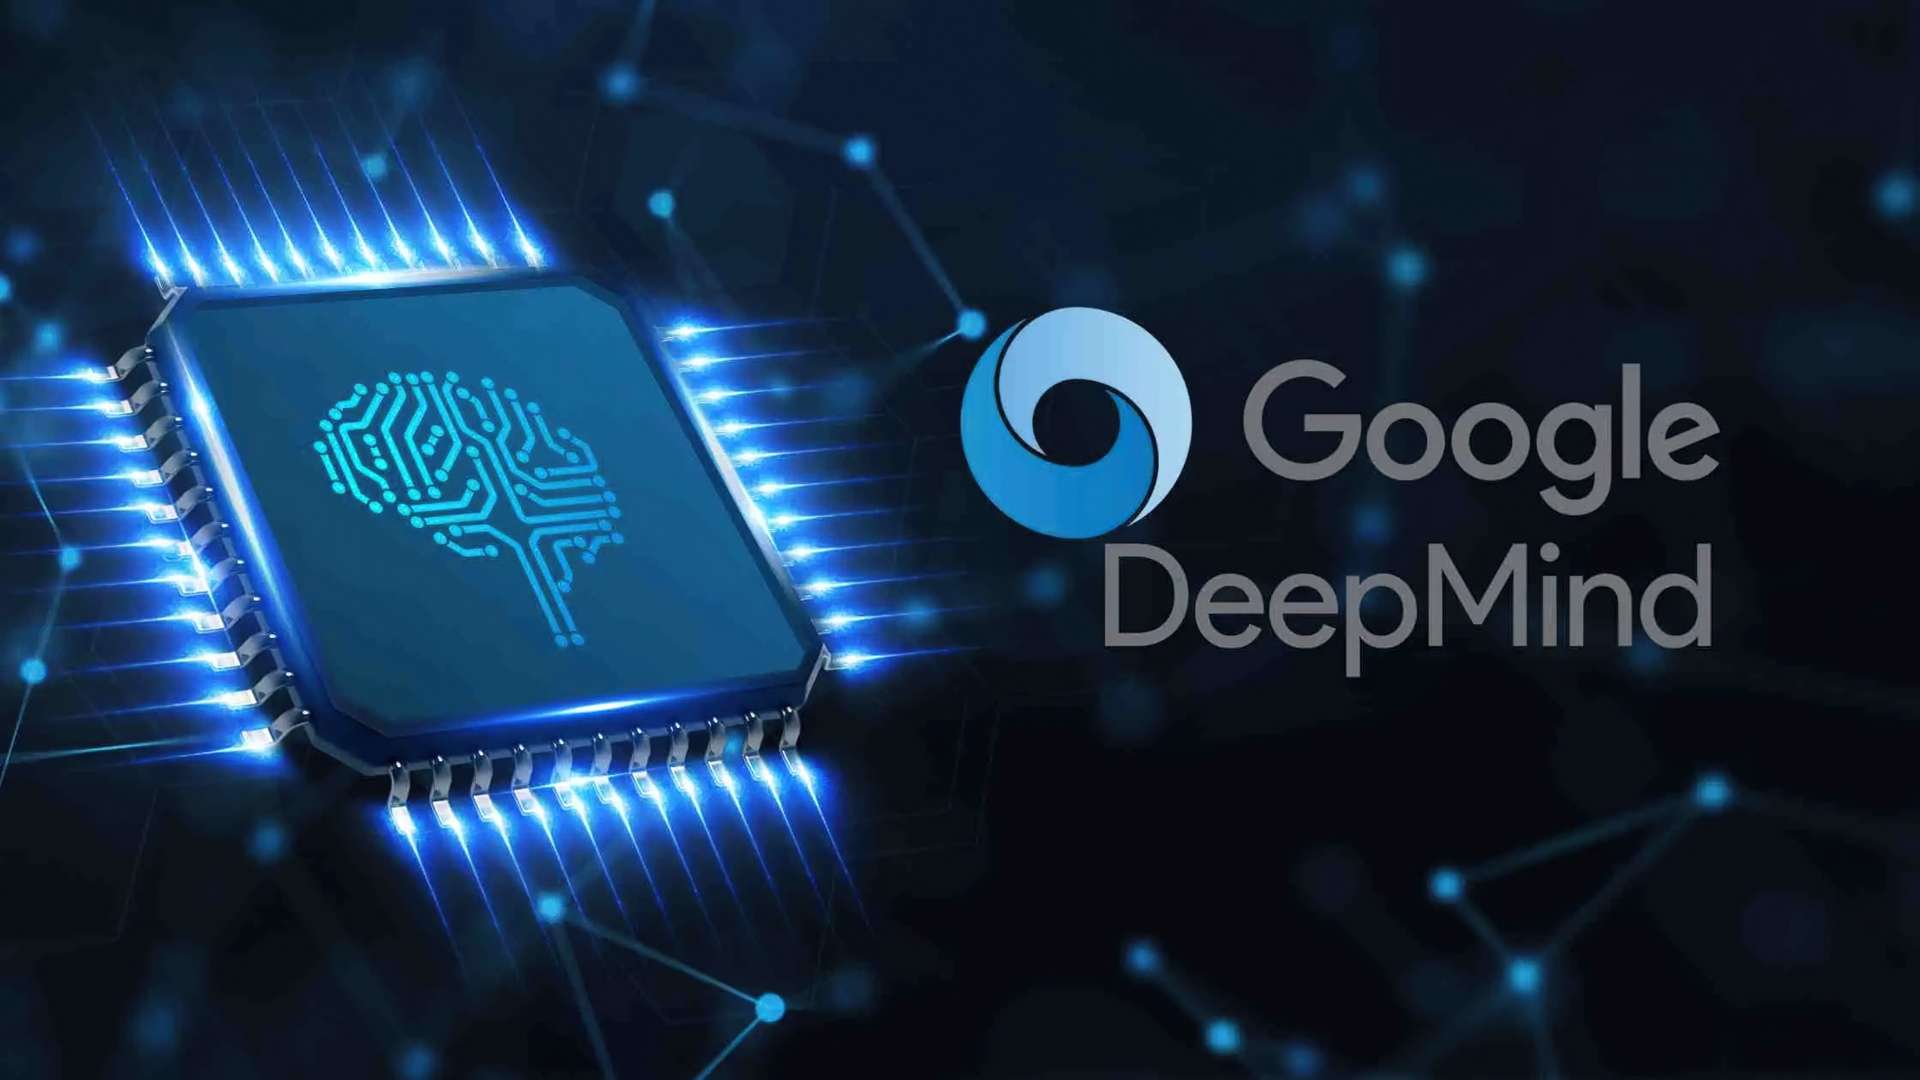 DeepMind firmy Google twierdzi, że zbliża się do osiągnięcia inteligencji na poziomie człowieka